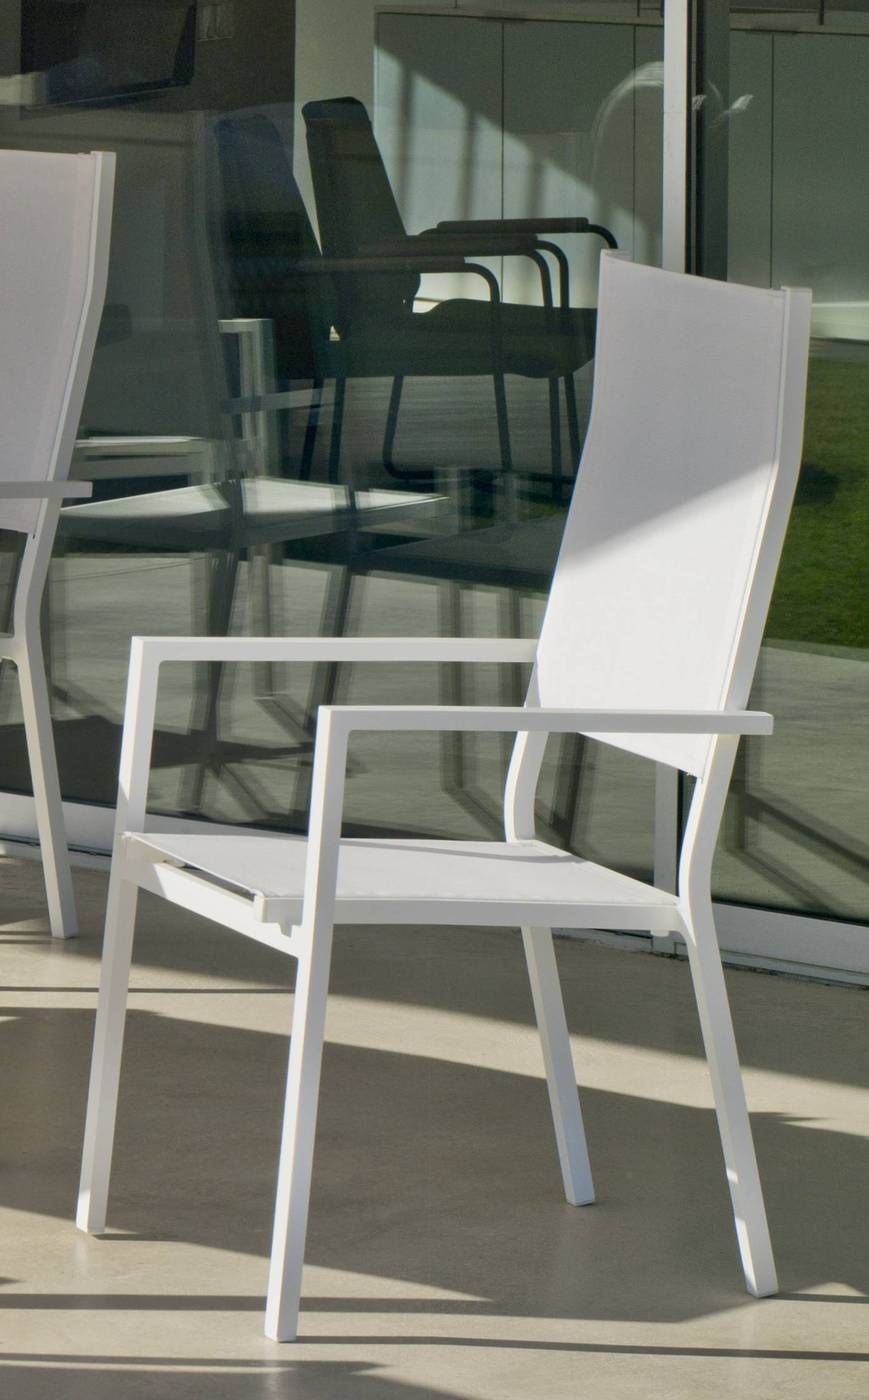 Sillón respaldo alto, apilable, de aluminio color blanco, plata o antracita, con asiento y respaldo de textilen